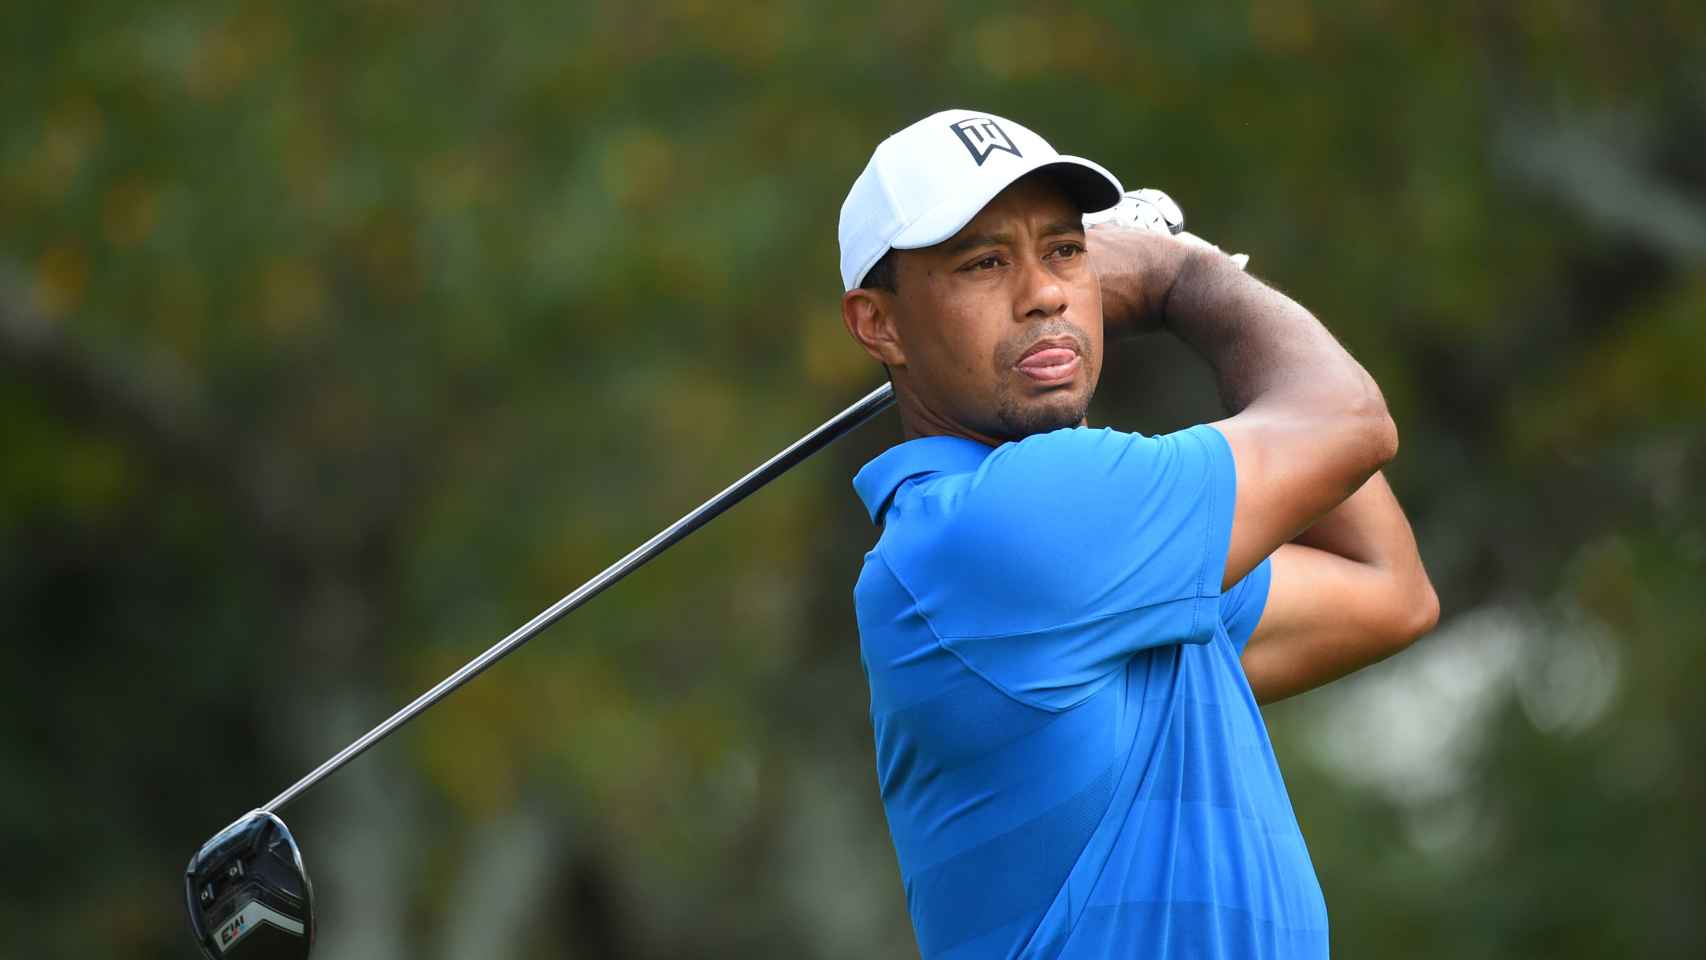 Tiger Woods está a un paso de volver a ganar un torneo cinco años después